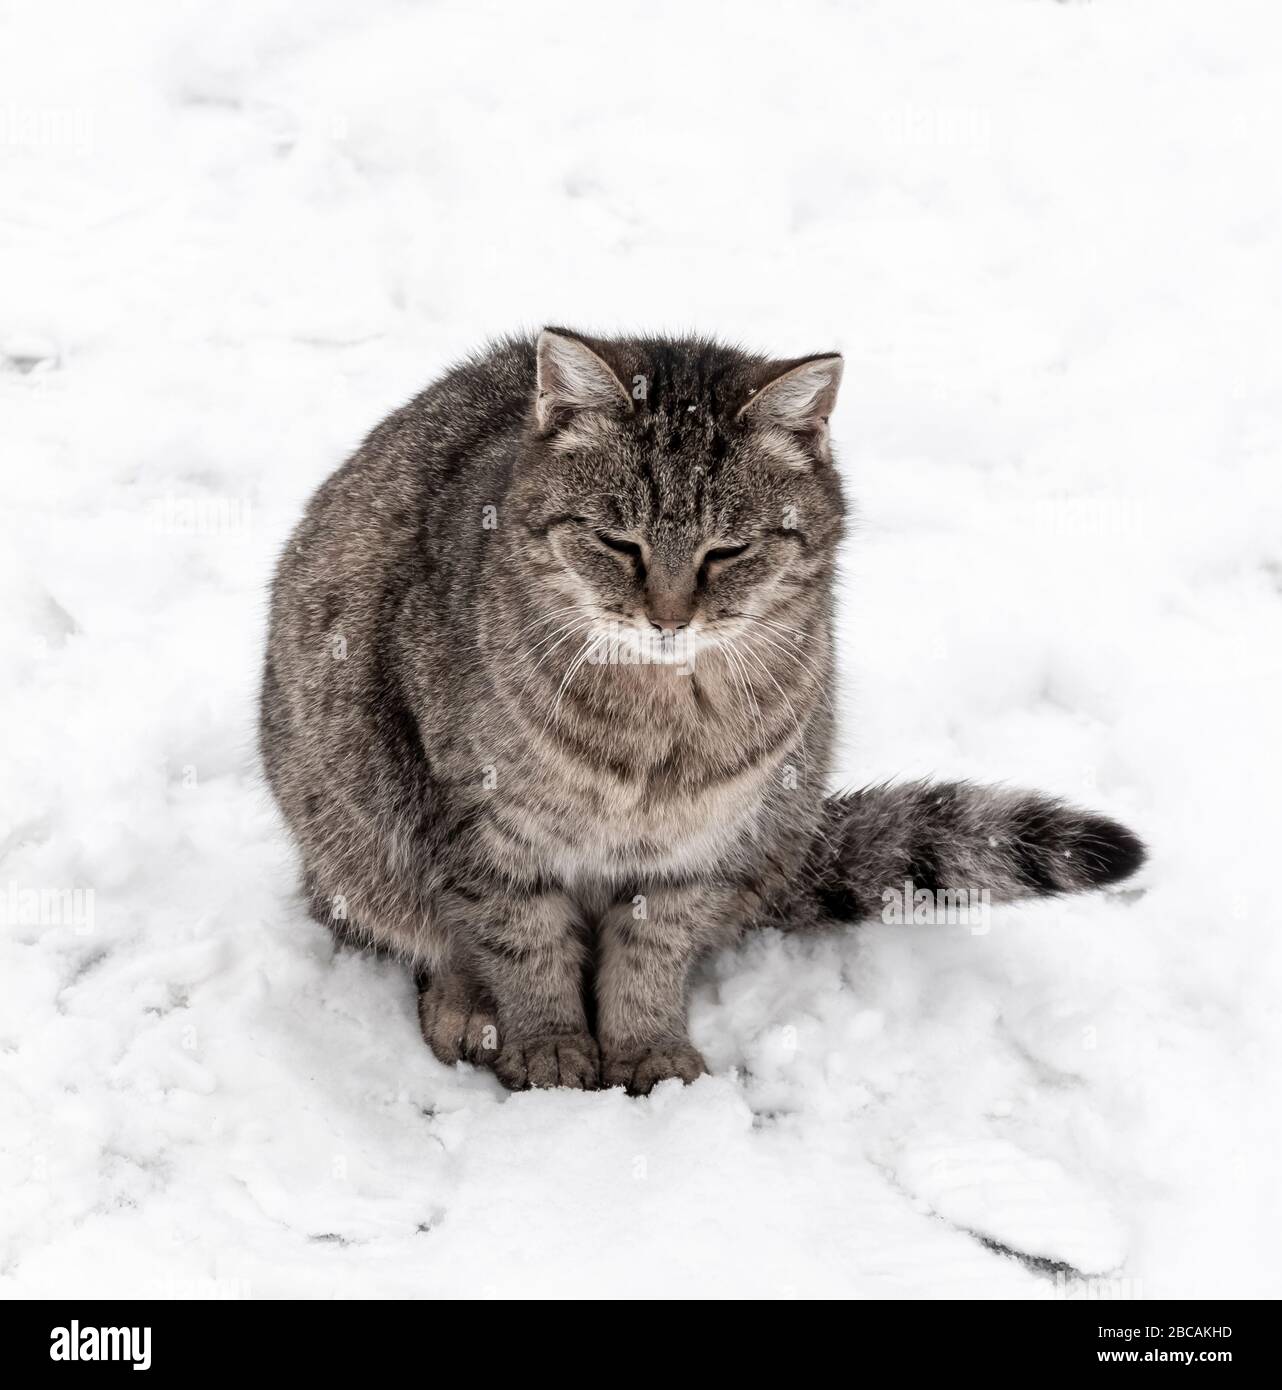 Le chat gris se trouve sur la proximité de neige. Banque D'Images